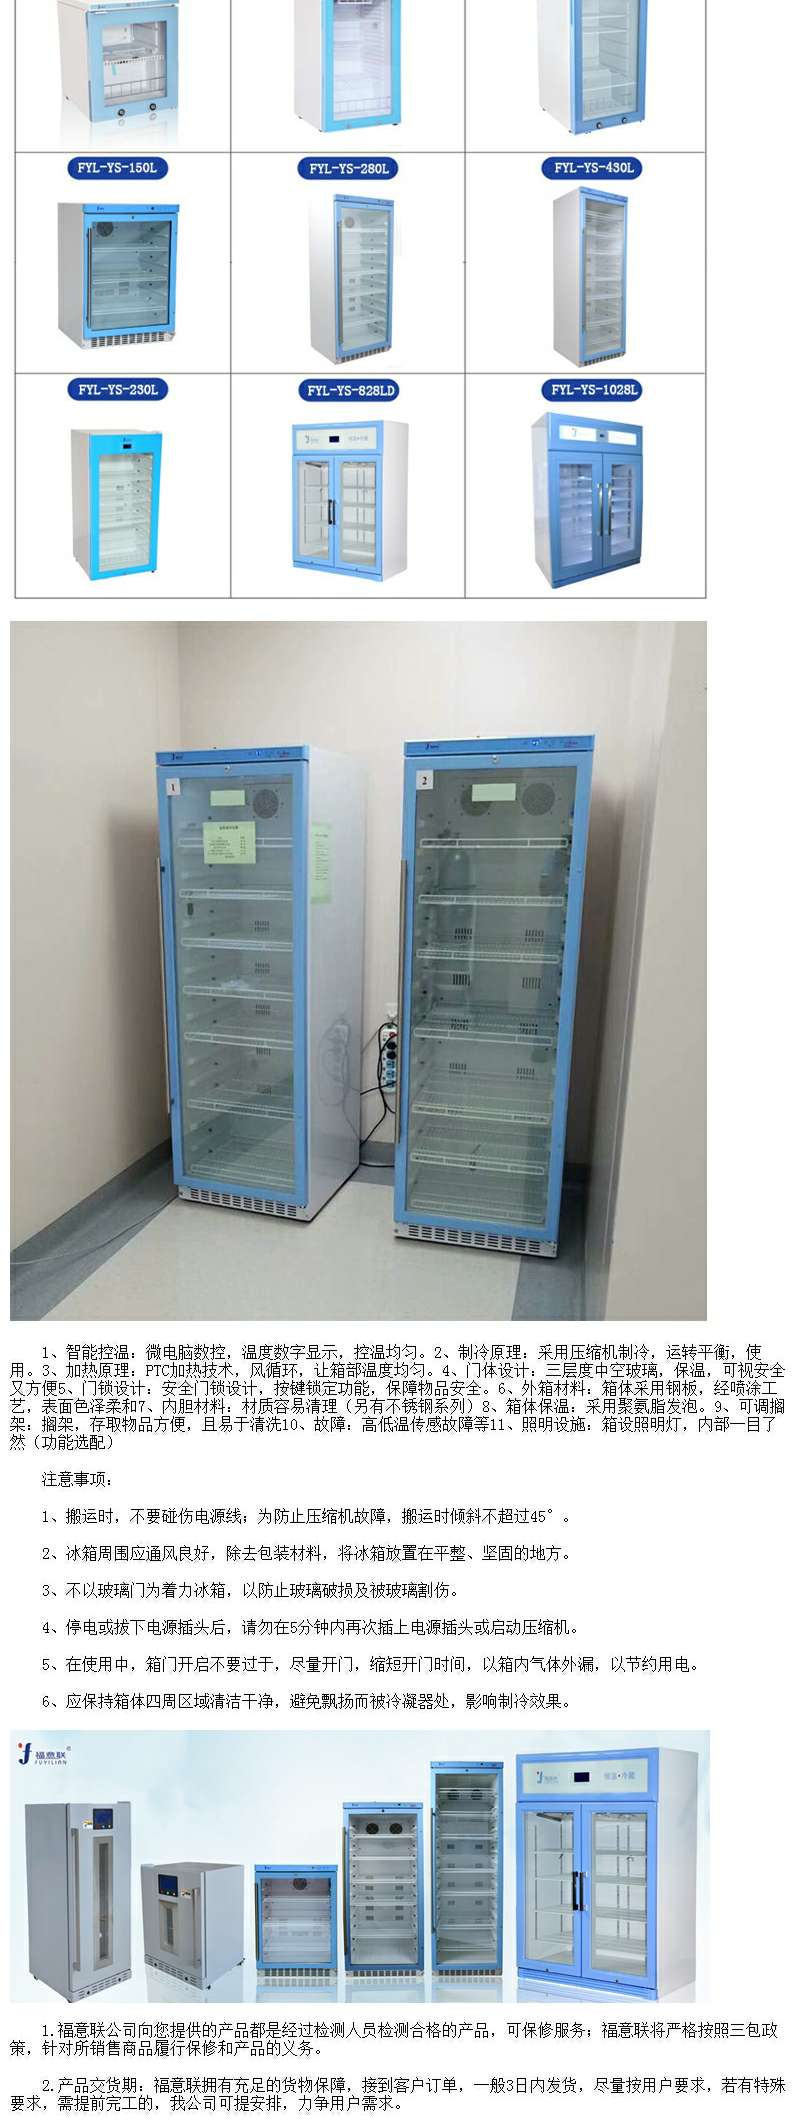 福意联恒温保存箱温度2-48度可调控容积150L技术指导和说明